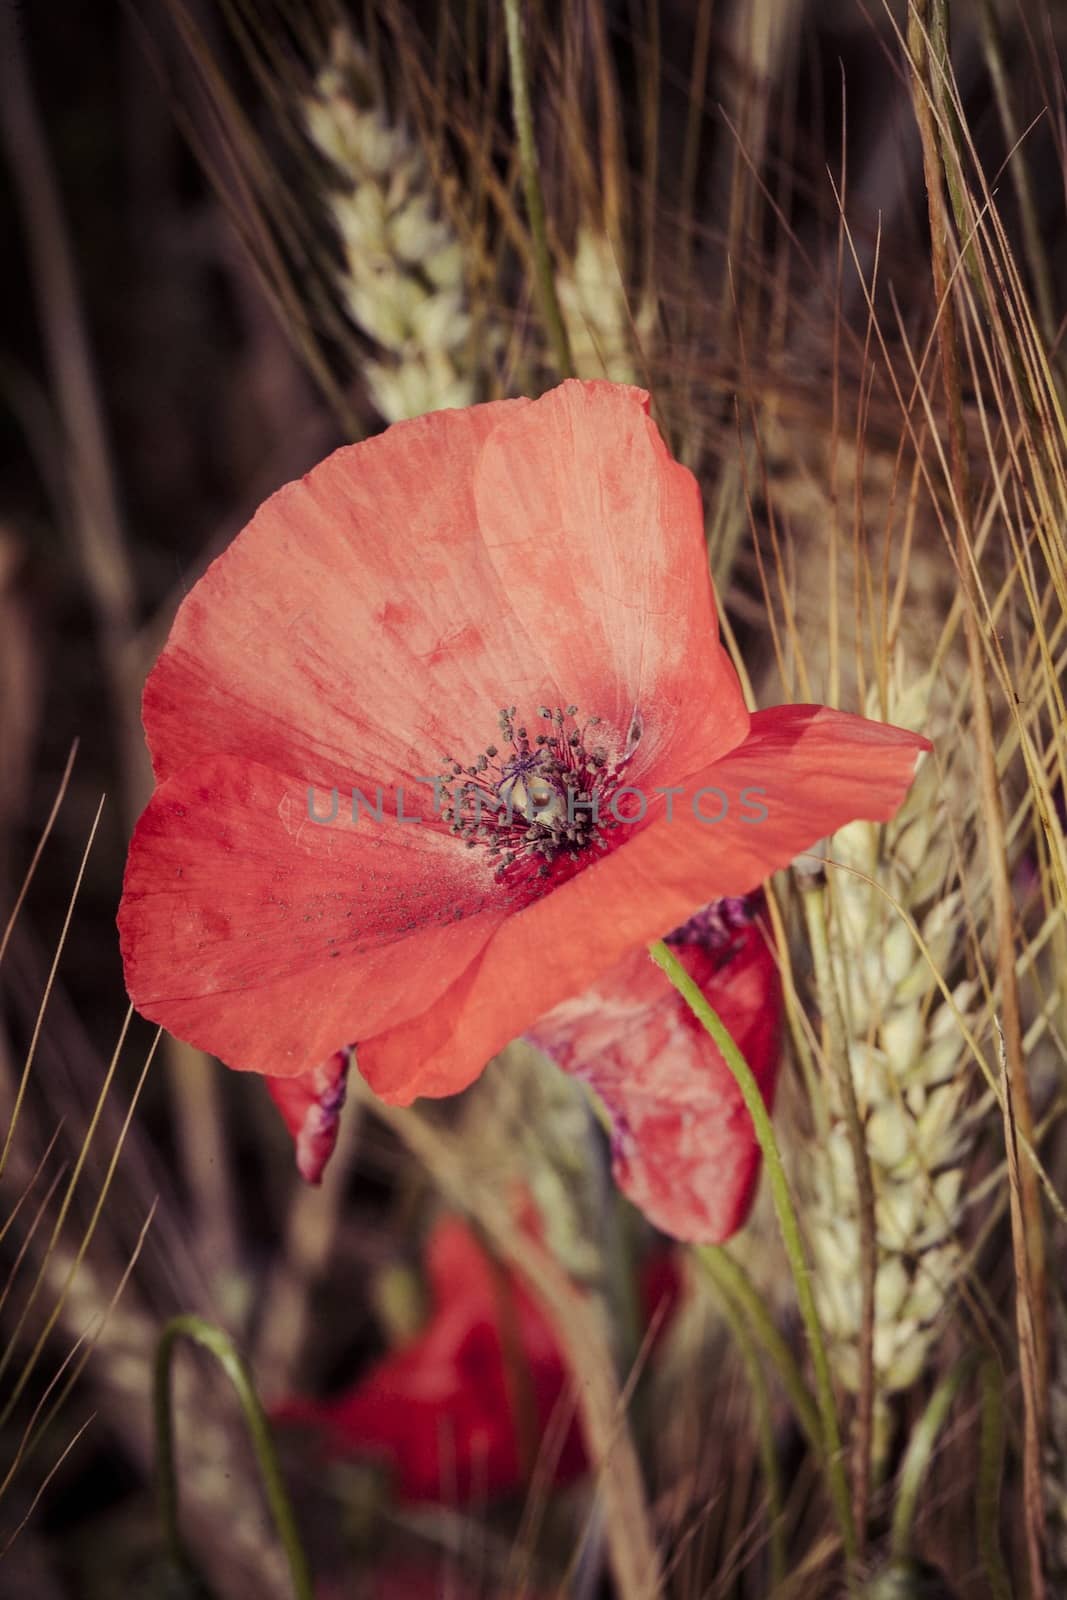 Picture of poppy in a field in daylight